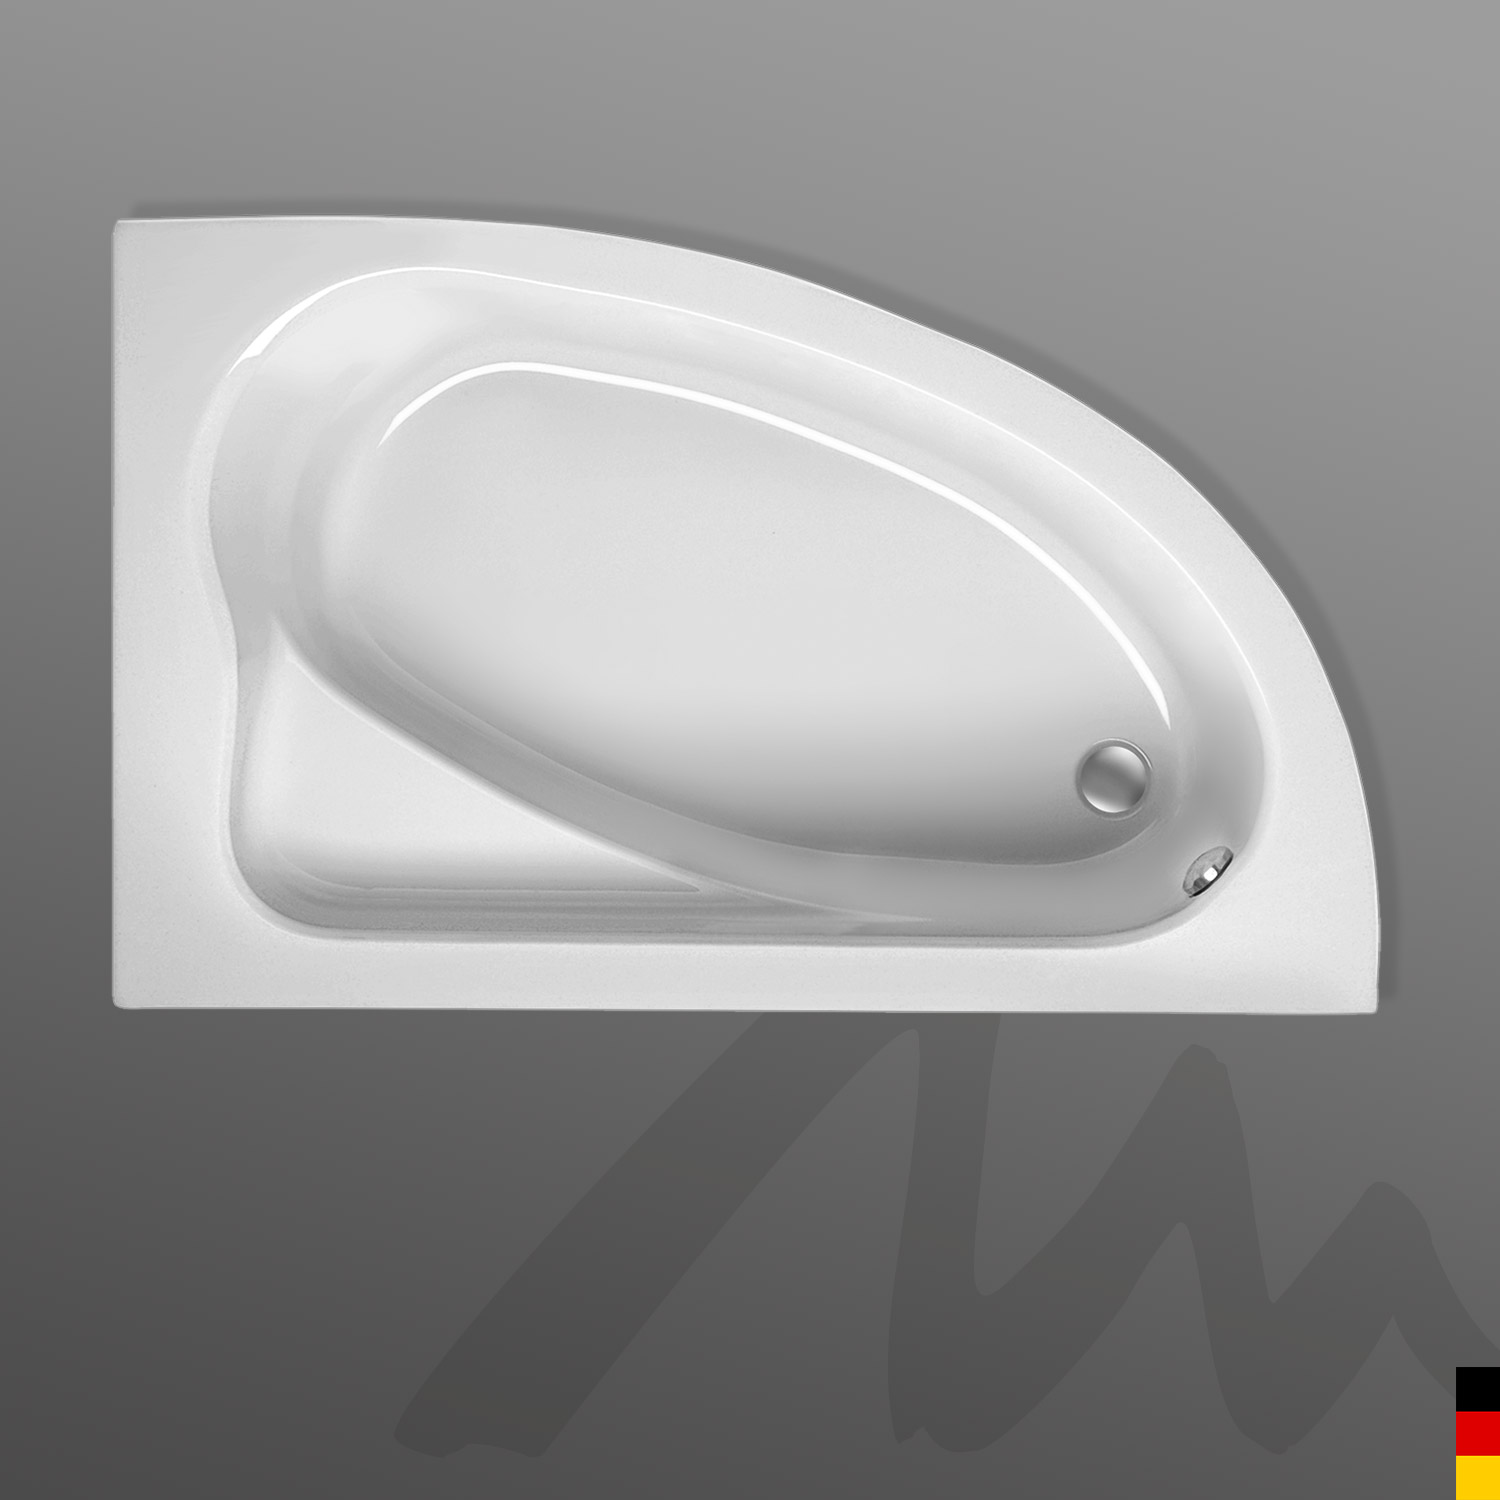 Mauersberger Badewanne Eckwanne Aspera 170/100 rechts mit Schürze/Panel 1-seitig Front  170x100x45cm  Farbe:weiß